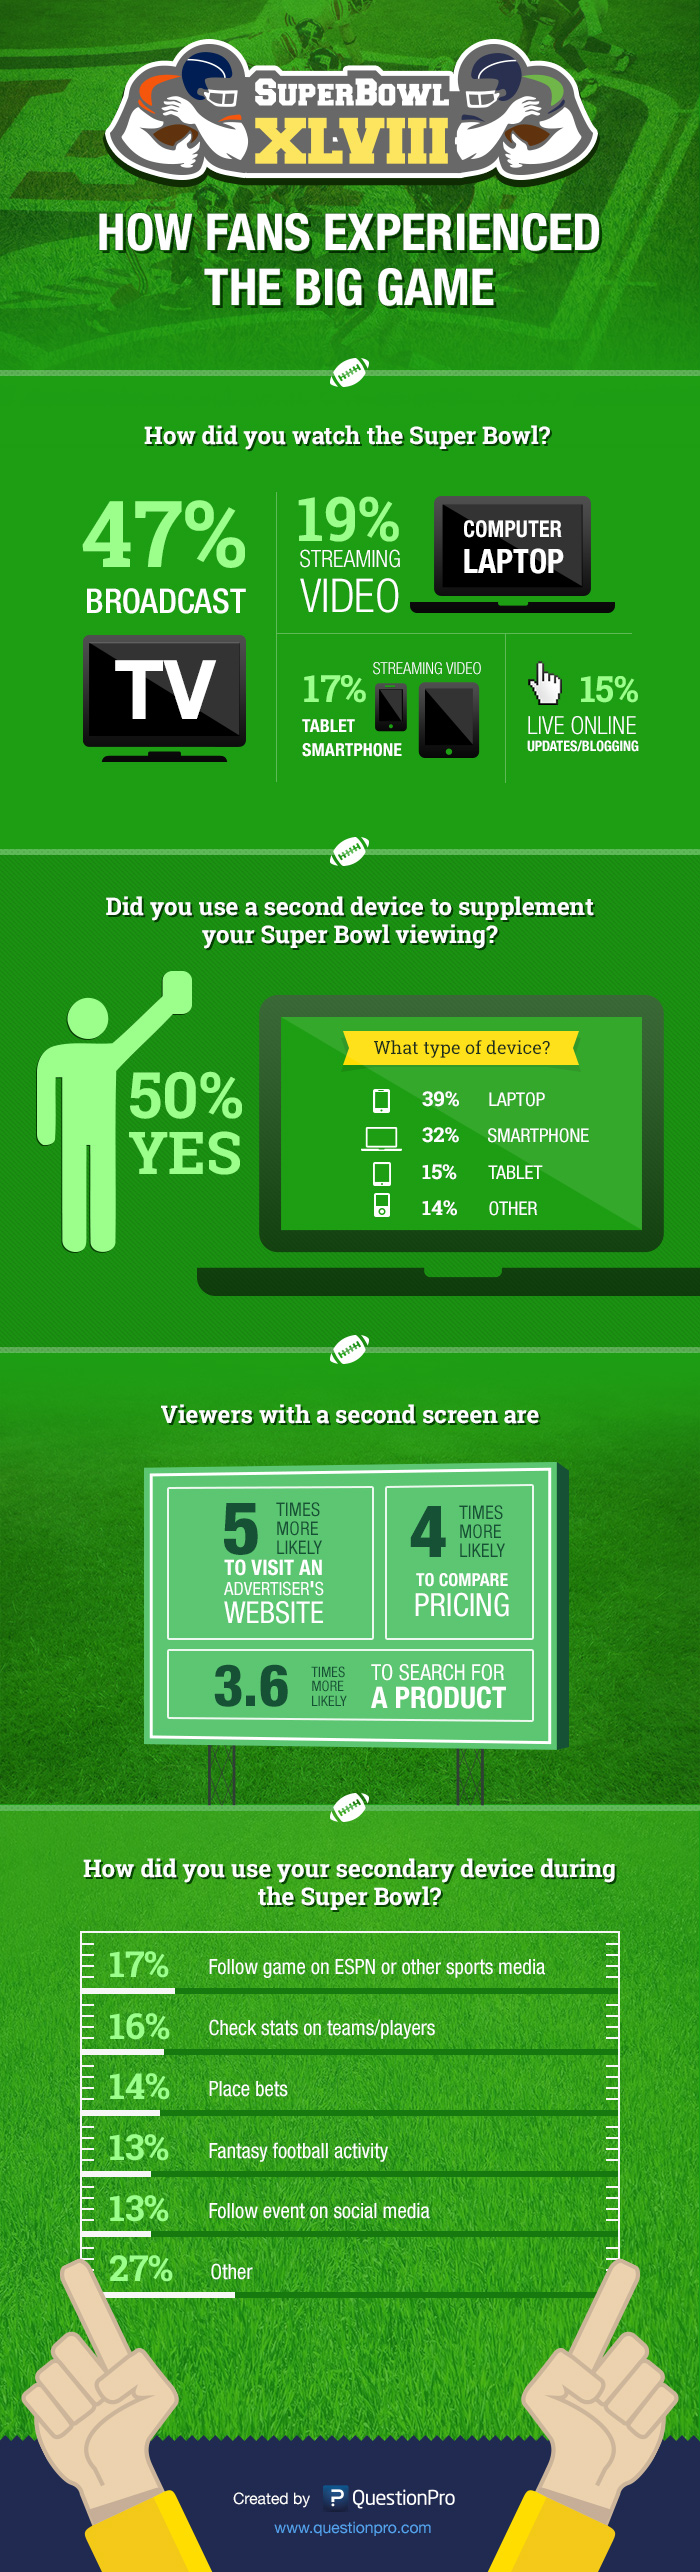 QuestionPro Post-Super Bowl Survey Infographic